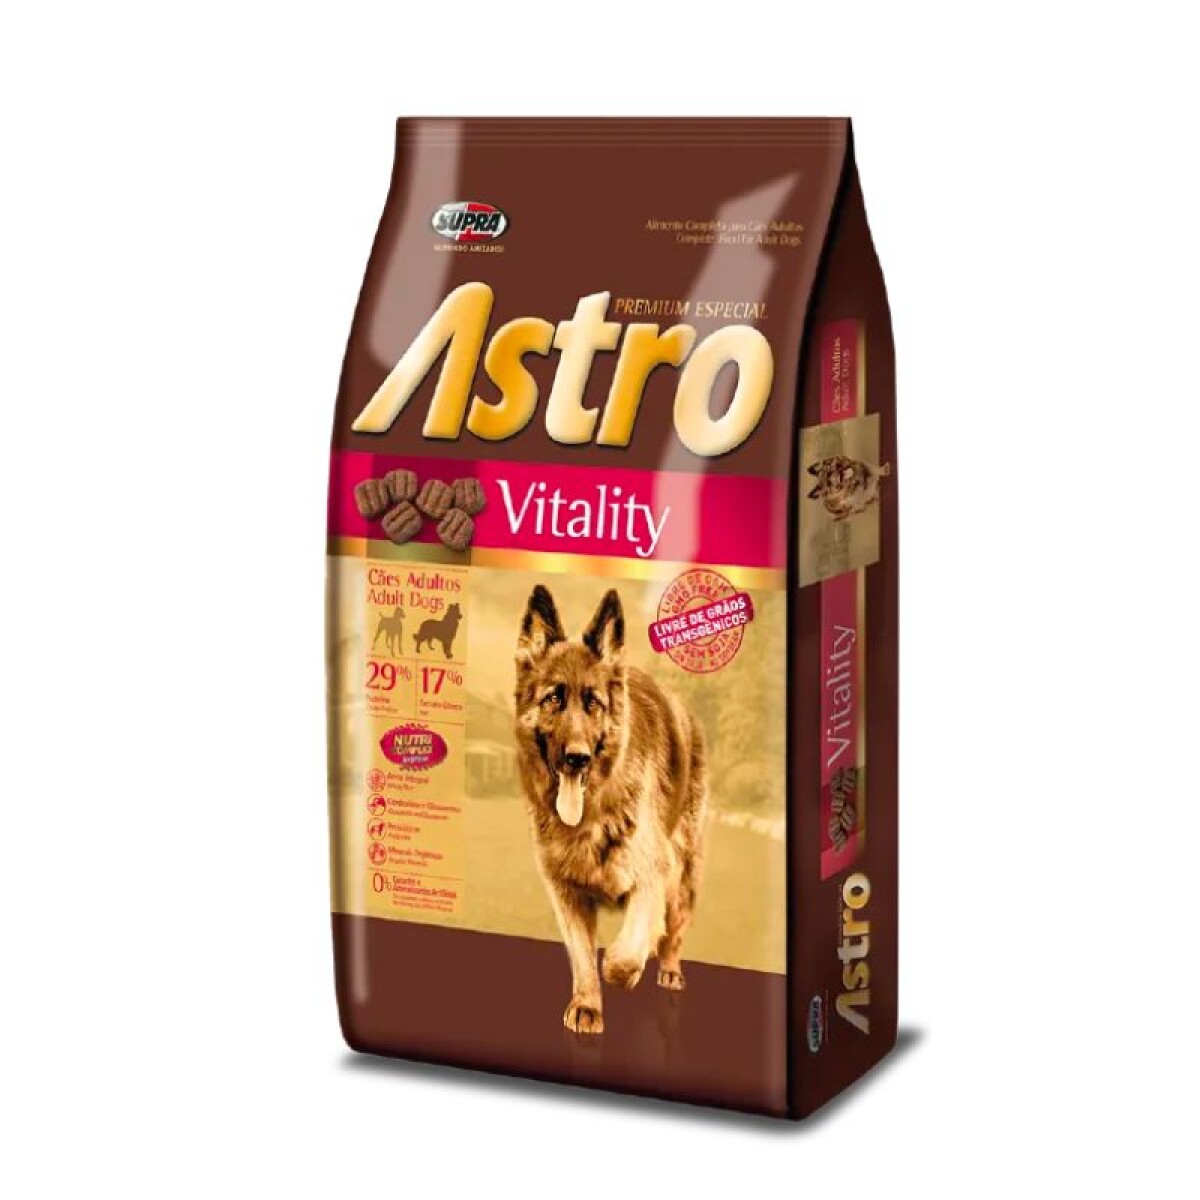 ASTRO VITALITY 15KG - Astro Vitality 15kg 